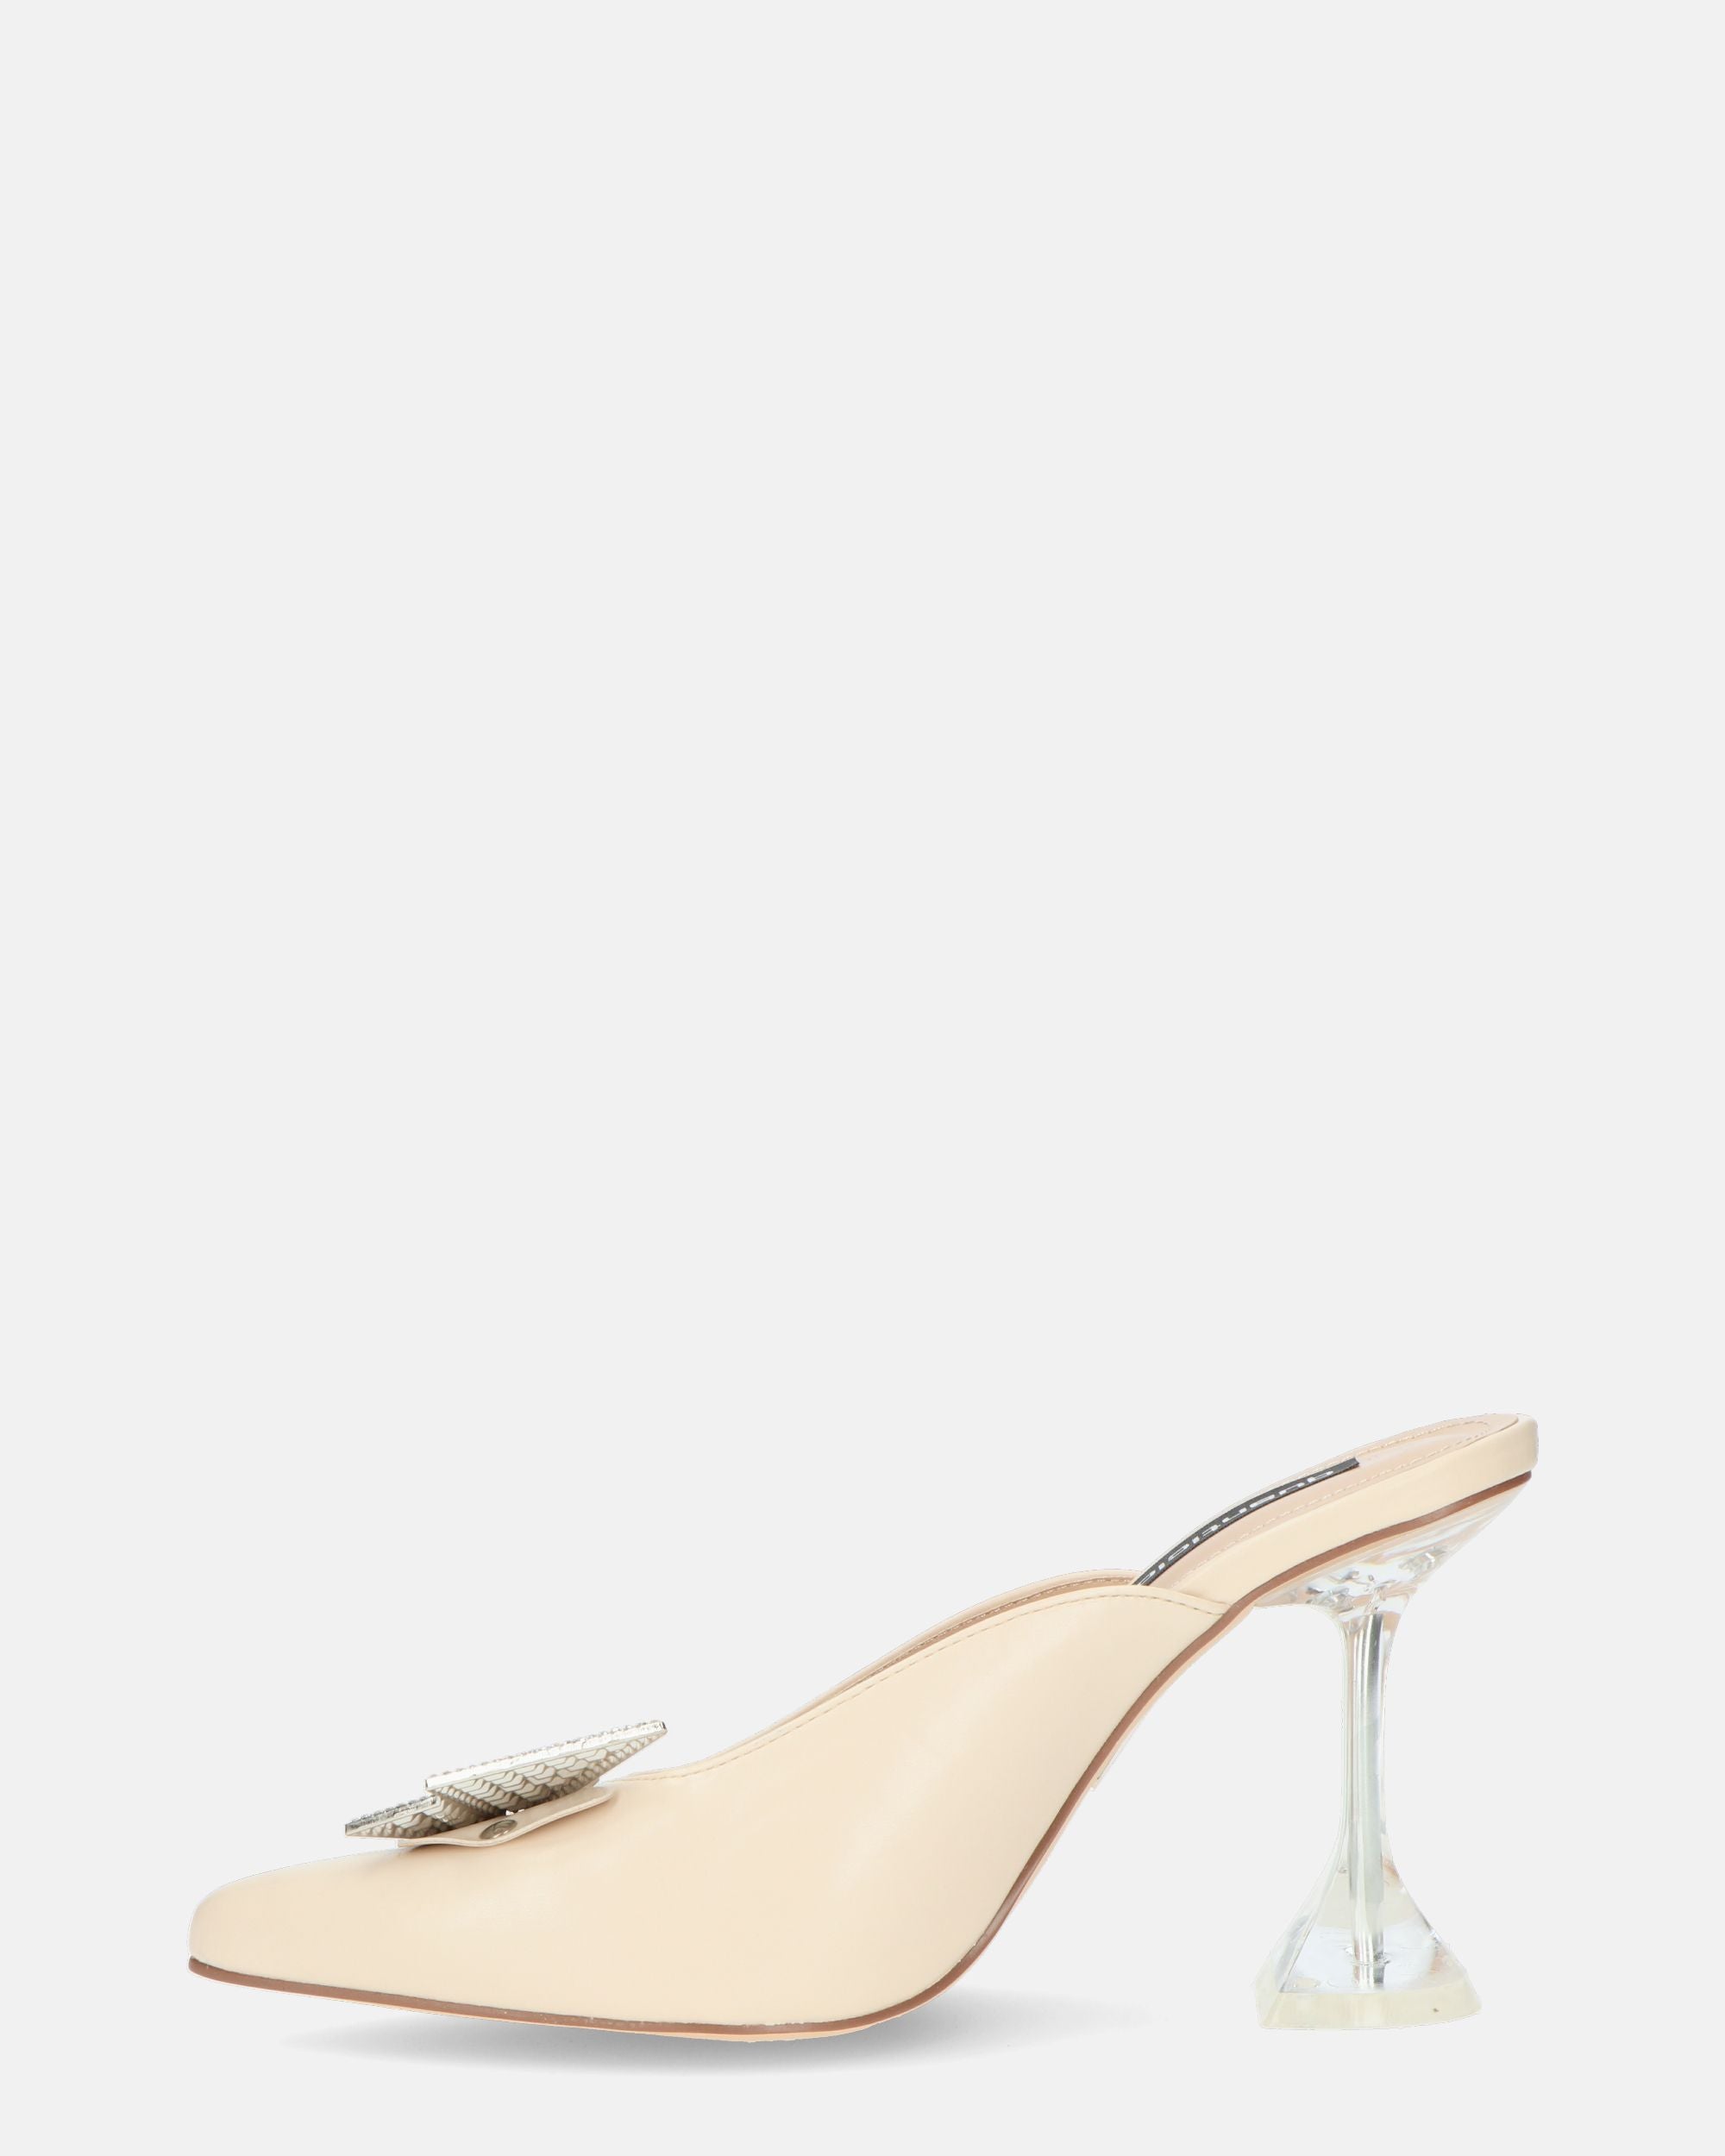 DOJA - zapatos de tacón en ecopiel beige con mariposa de pedrería en la puntera